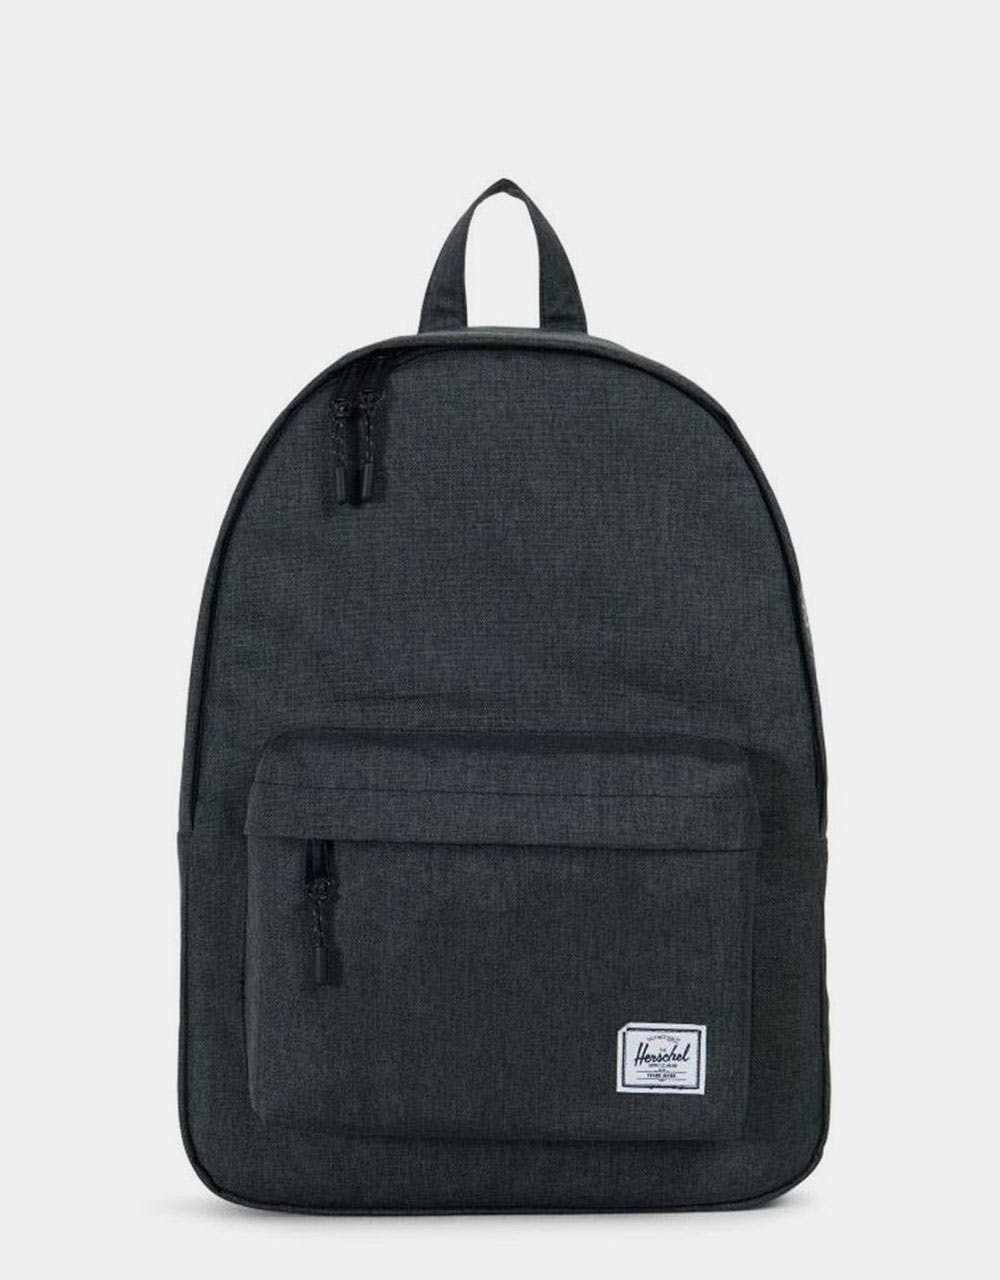 Herschel Supply Co. Classic Backpack - Black Crosshatch